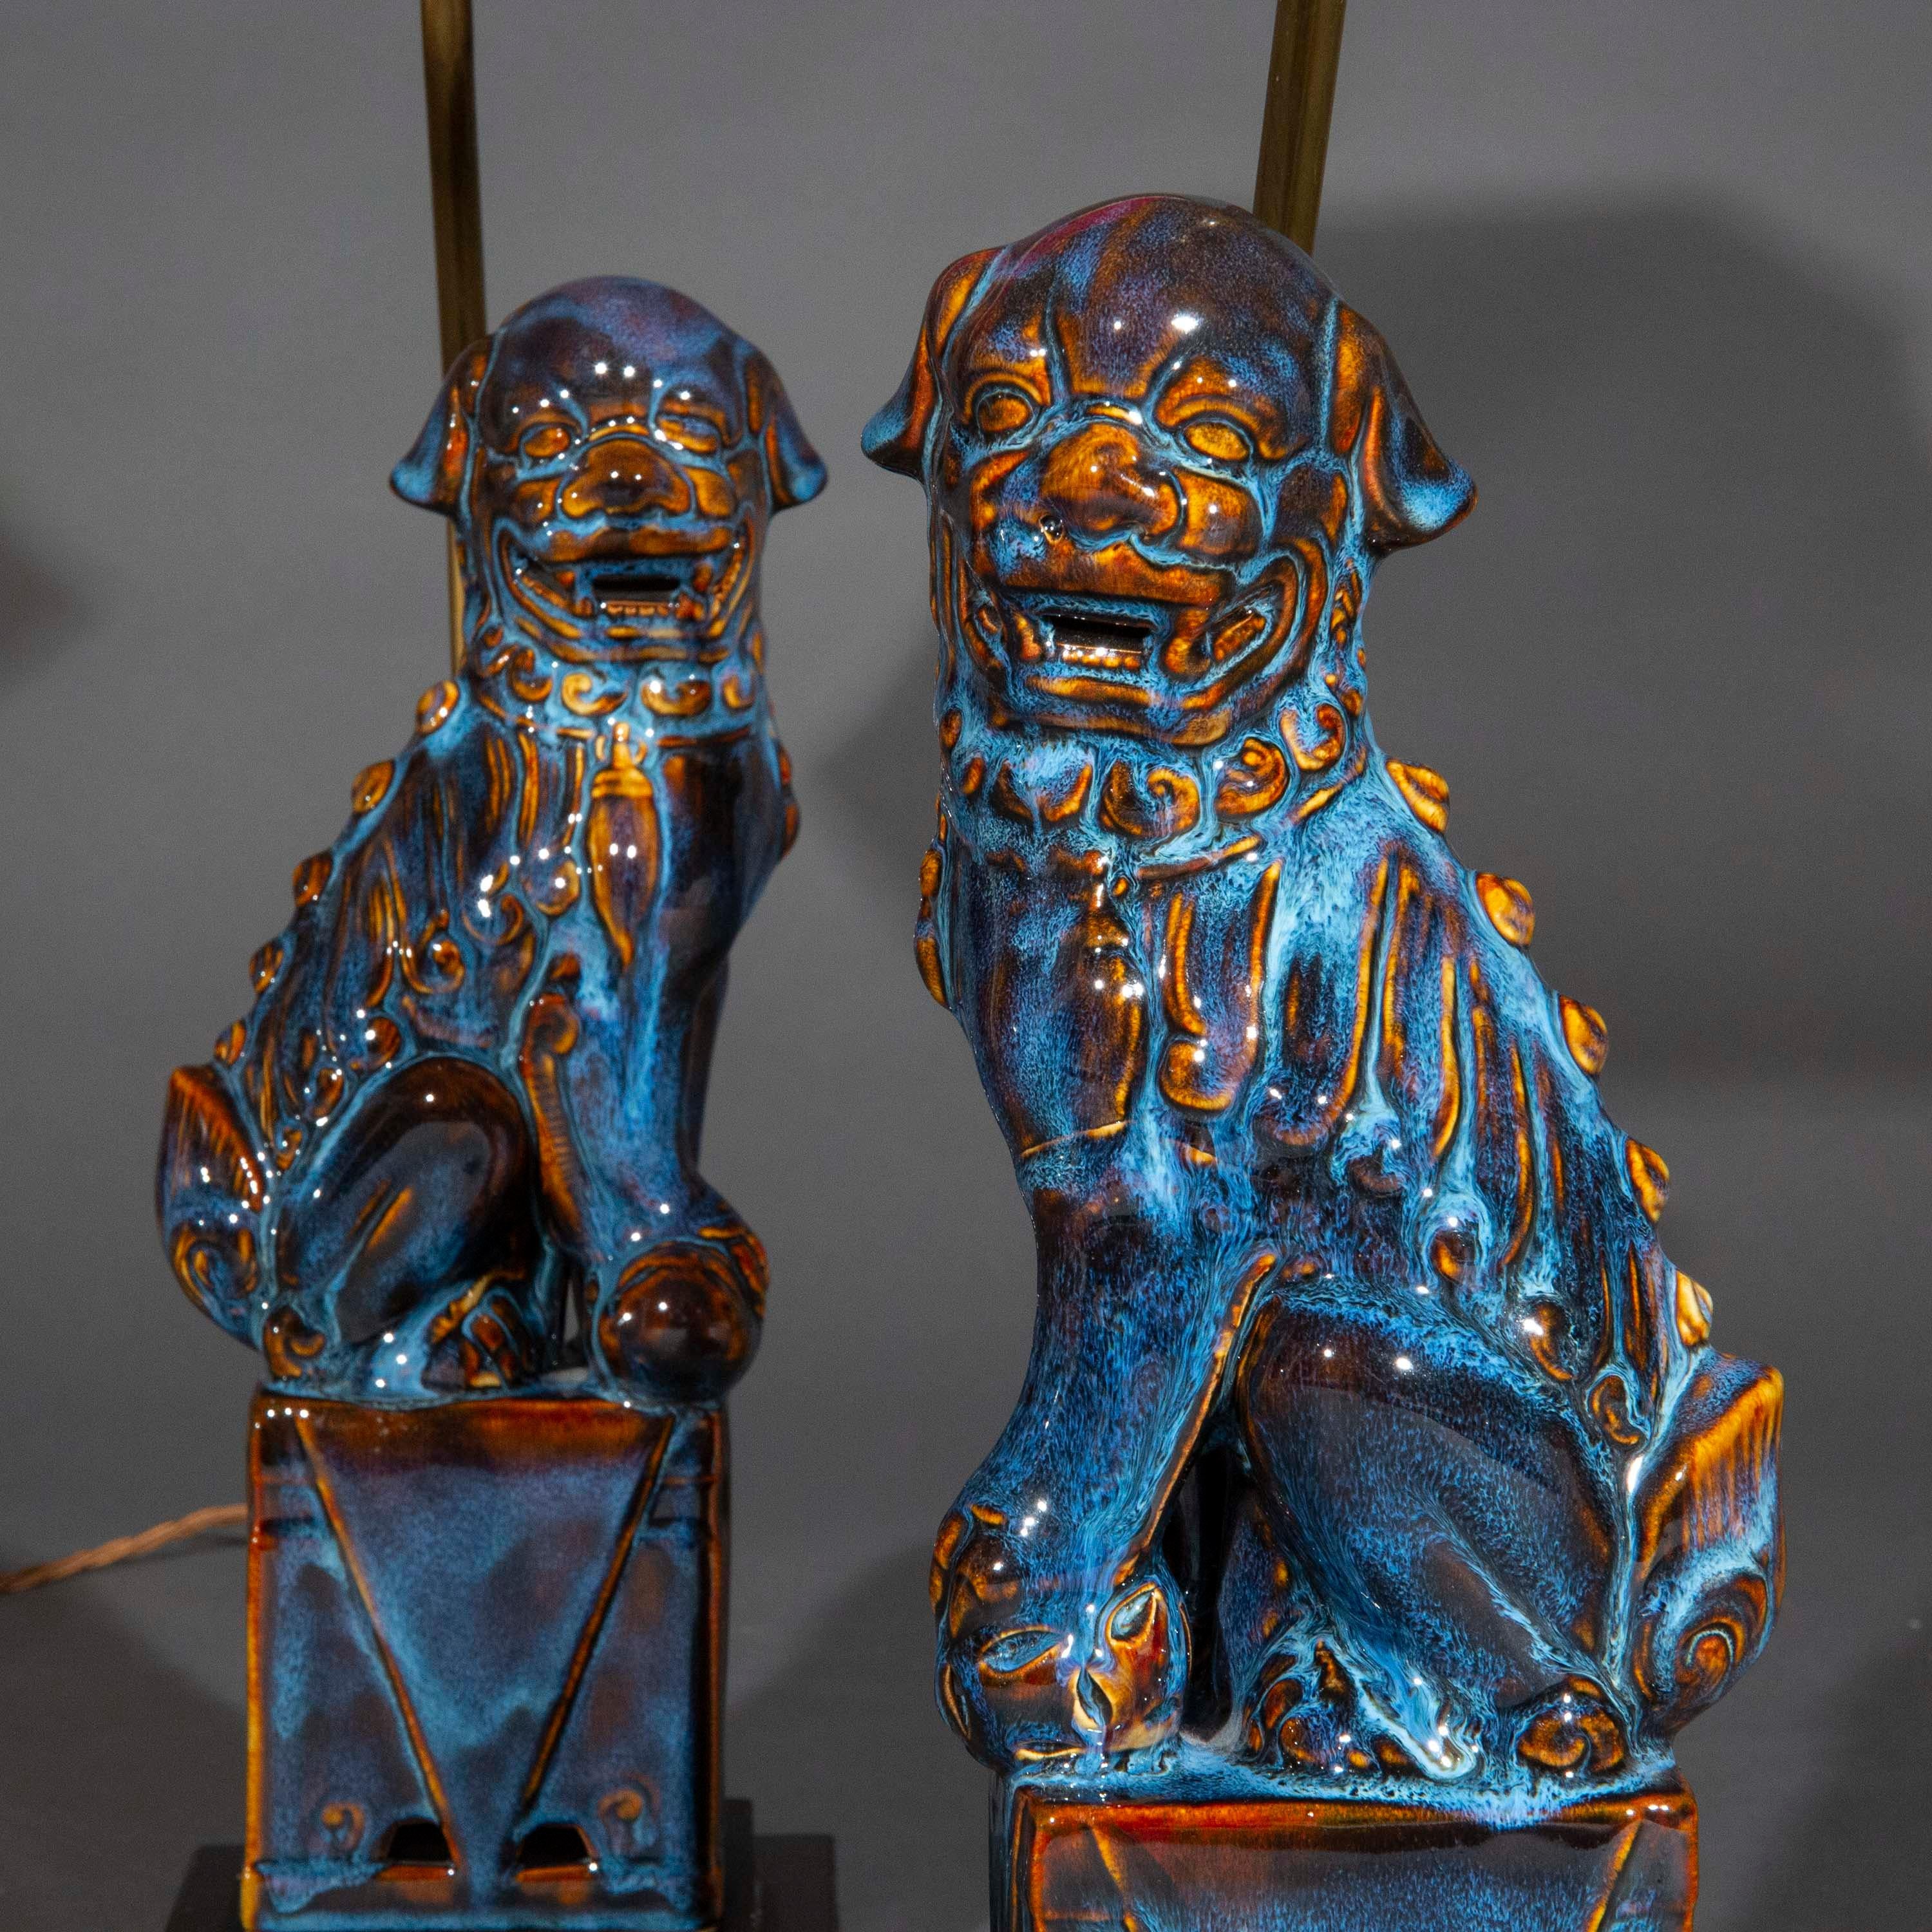 Fabuleuse paire de lampes de table représentant des chiens foo ou des lions de temple bouddhiste, magnifiquement émaillés de stries violettes et bleues (flambé).

Nous aimons l'opulence des couleurs et les motifs complexes de la glaçure. Les objets